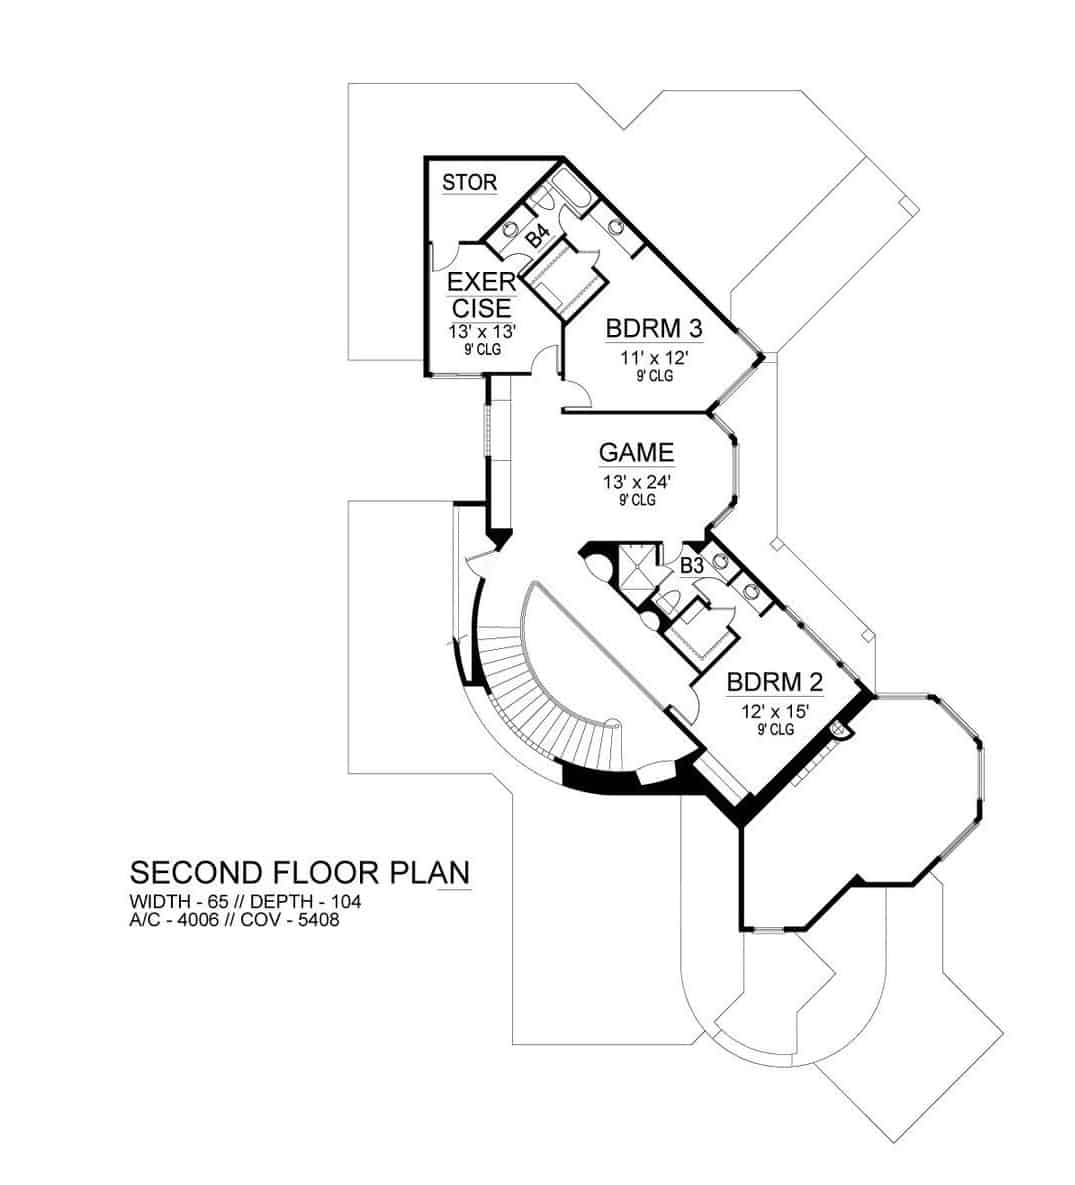 二楼平面图有两间卧室，游戏室和带储物柜的健身室。